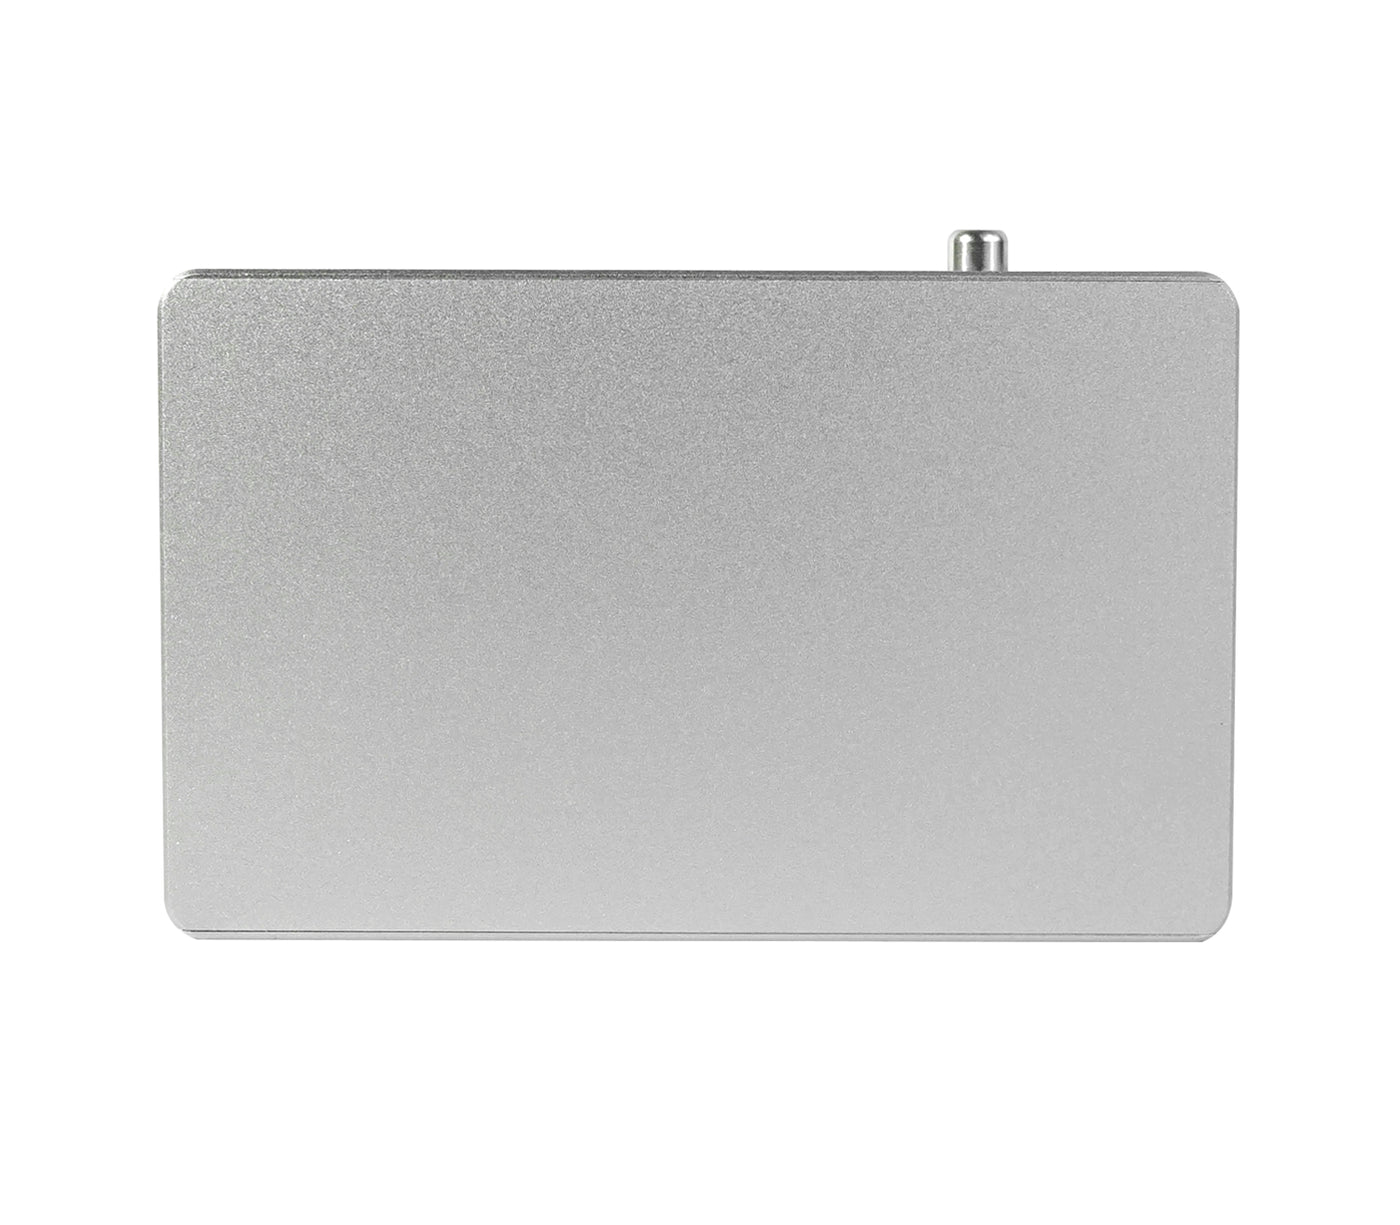 Zattcap Wallet Slim Card Holder Wallet